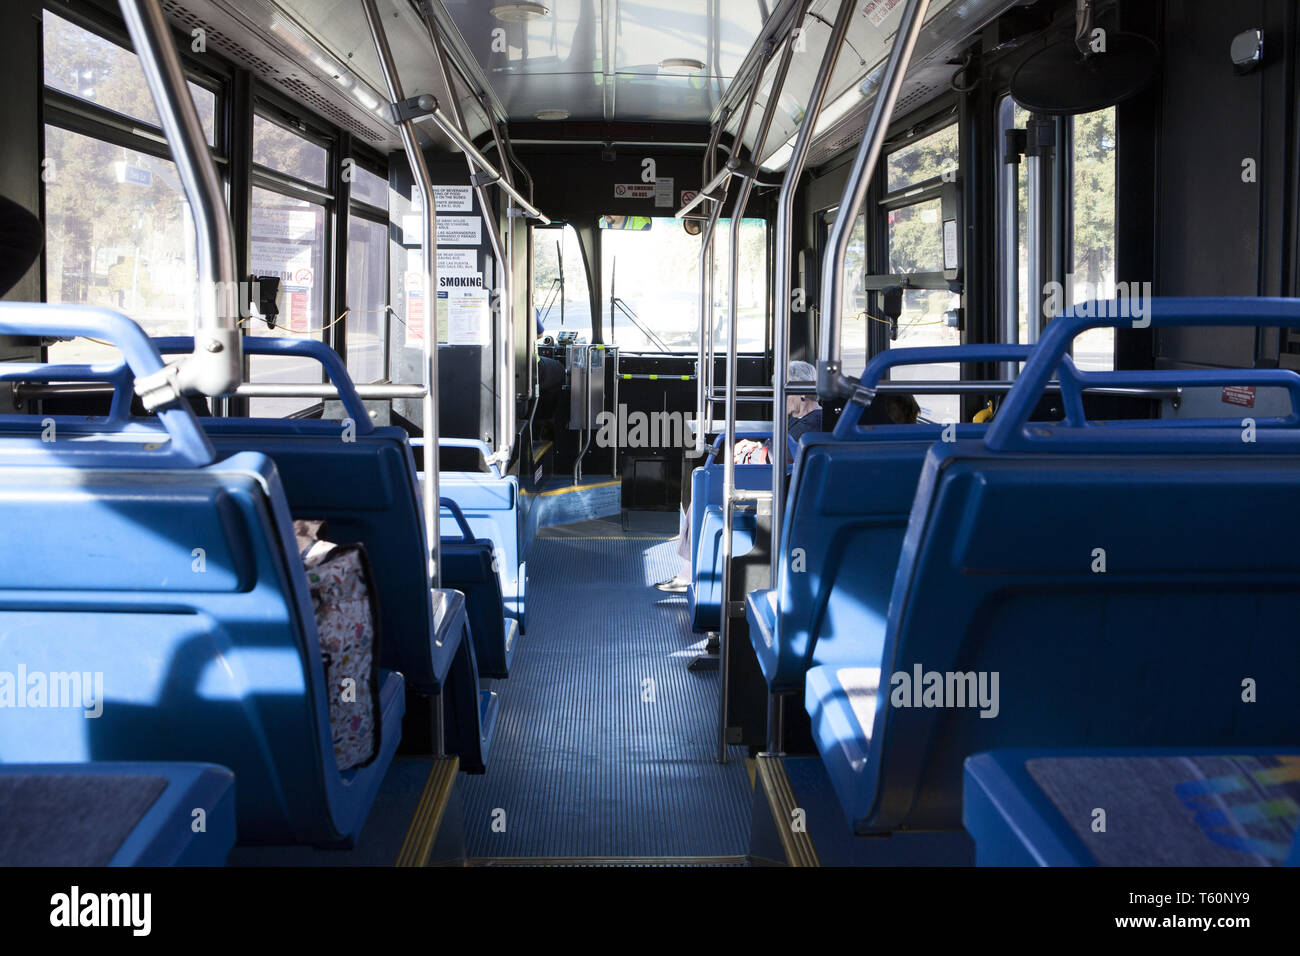 Nearly empty bus. Stock Photo